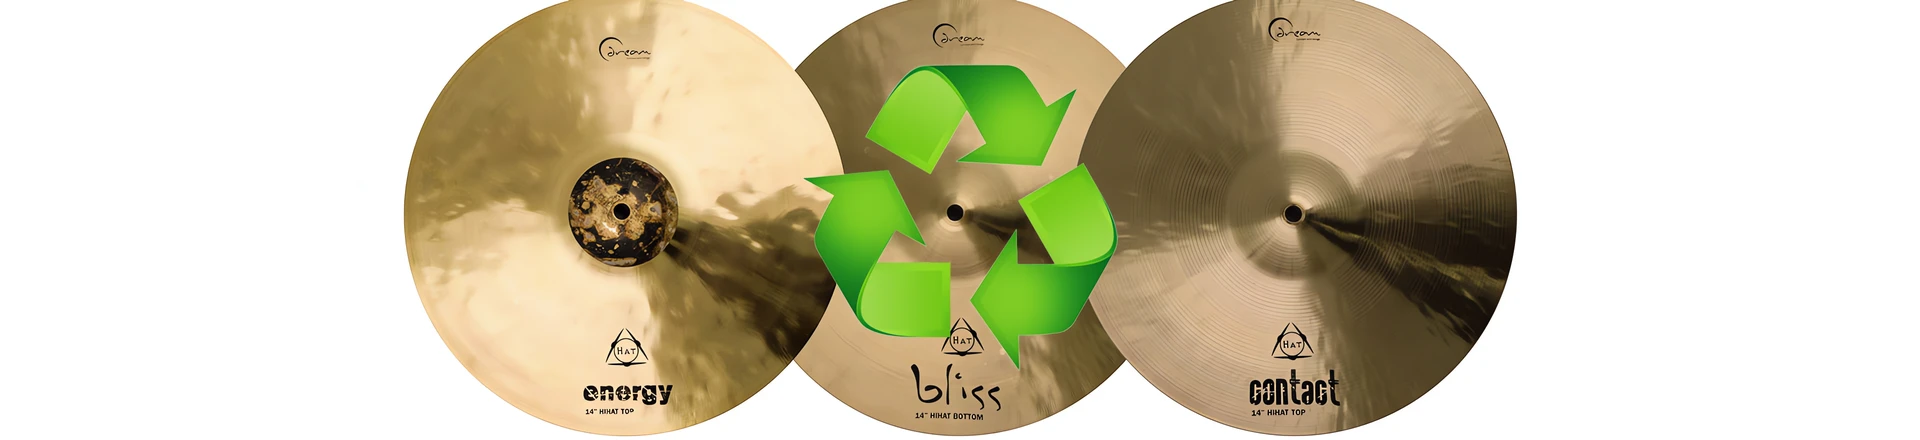 Dream Cymbals z unikalnyn programem recykligu talerzy (VIDEO)